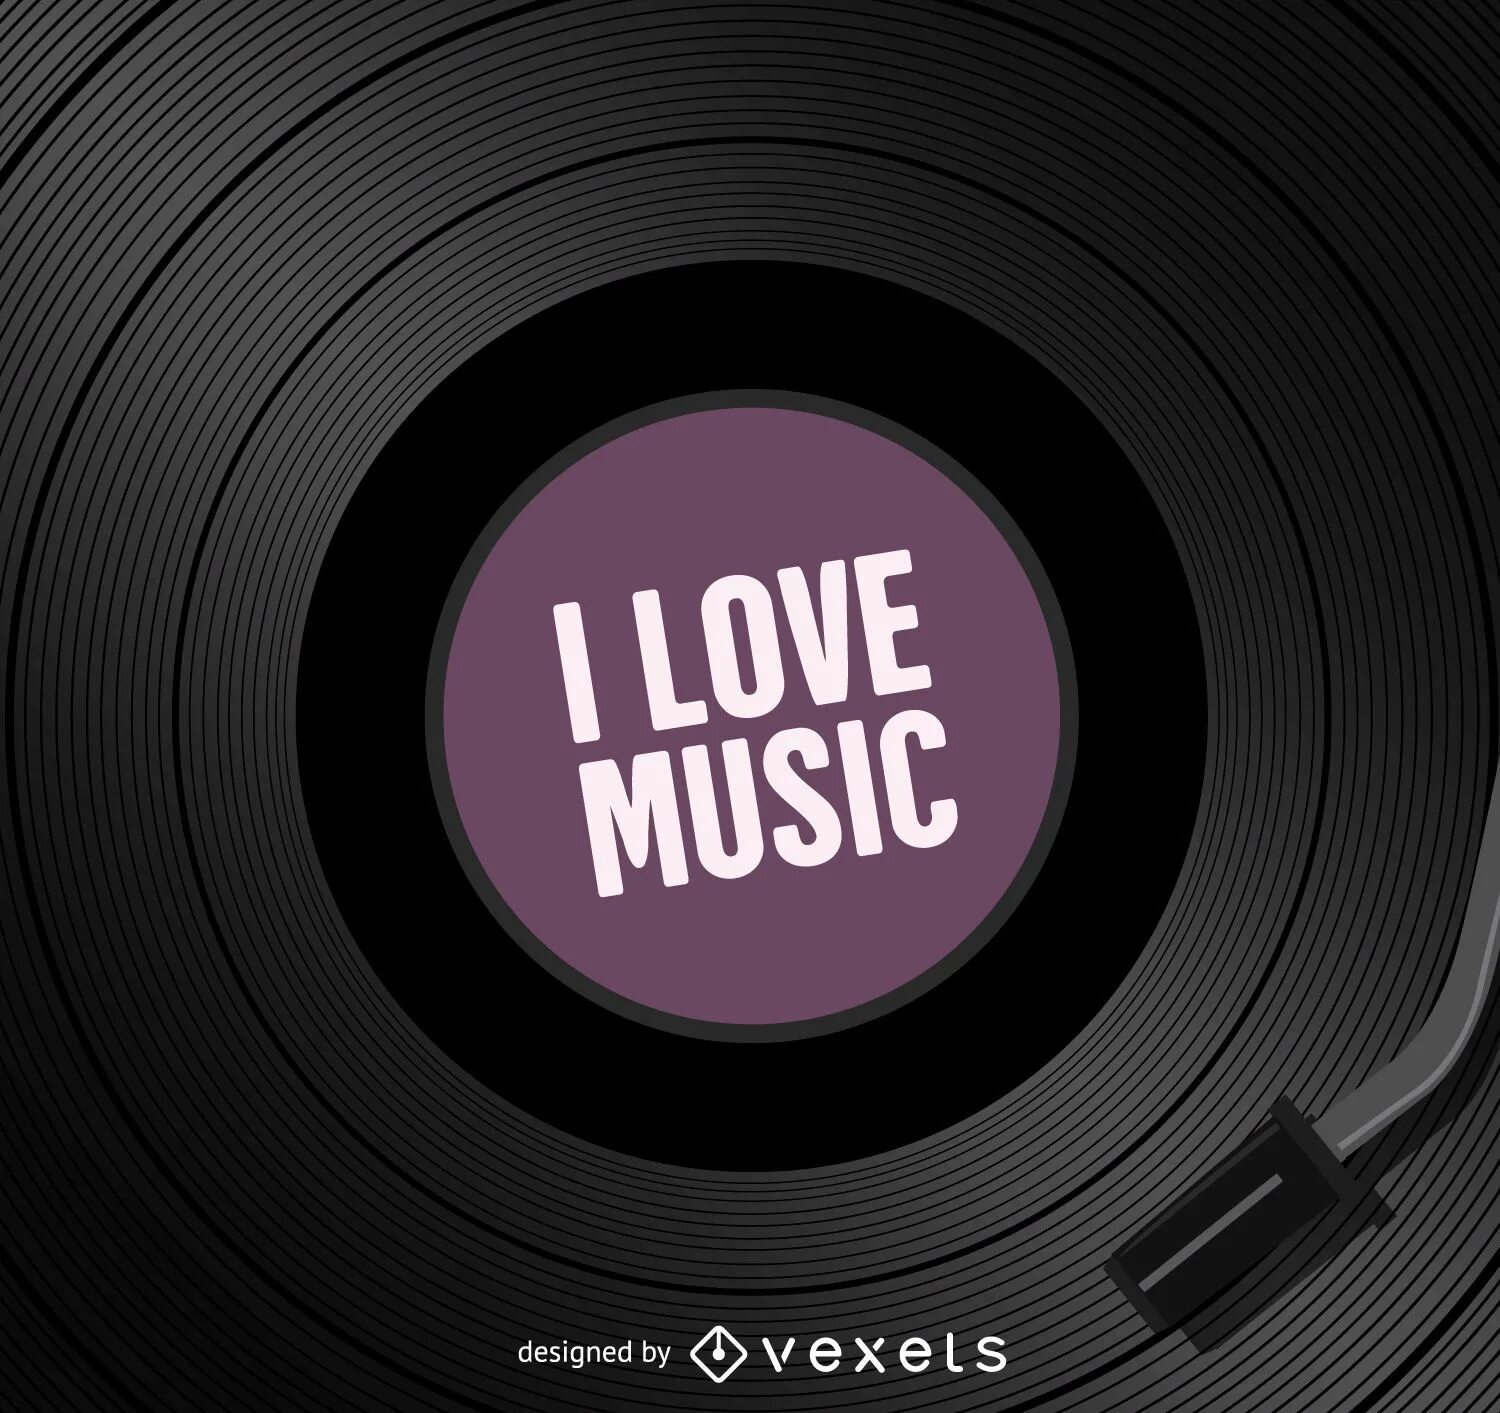 Love Music. I Love Music картинки. Хаус музыка картинки. Винил вектор. House music 7